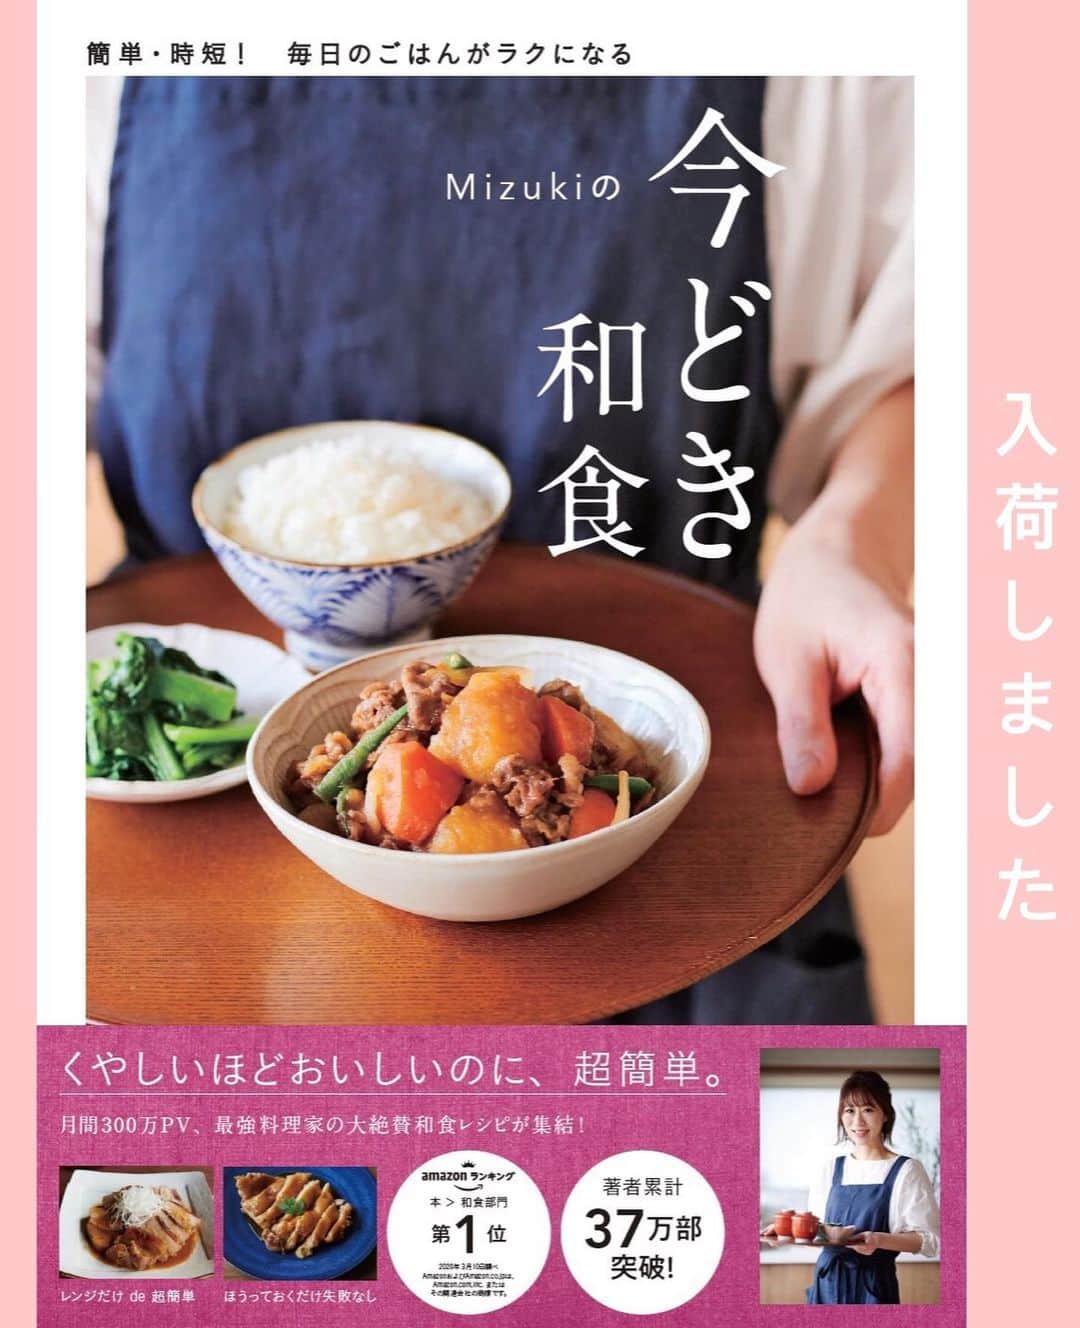 Mizuki【料理ブロガー・簡単レシピ】さんのインスタグラム写真 - (Mizuki【料理ブロガー・簡単レシピ】Instagram)「・﻿ 【レシピ】ーーーーーーーーーーーーーー﻿ ♡揚げない♡名古屋風甘辛スペアリブ♡﻿ ーーーーーーーーーーーーーーーーーーー﻿ ﻿ ﻿ ﻿ おはようございます(*^^*)﻿ ﻿ 今日ご紹介させていただくのは﻿ 名古屋風甘辛スペアリブ♡﻿ お手軽な手羽中を使用して﻿ 揚げずに作れる超簡単レシピです♩﻿ 甘辛スパイシーなたれは﻿ 説明不要の美味しさですよ〜(*´艸`)﻿ (なので普段より多め😂)﻿ ﻿ ごはんとビールを多めに用意して﻿ 是非お試し下さいね(*^^*)﻿ ﻿ ﻿ ﻿ ーーーーーーーーーーーーーーーーーーーー﻿ 【2〜3人分】﻿ 手羽中...12〜15本﻿ 片栗粉...大2﻿ サラダ油...大2﻿ ●醤油・みりん...各大2﻿ ●酒・砂糖...各大1﻿ ごま・粗挽き黒こしょう...各適量﻿ ﻿ 1.手羽中は骨に沿って切り込みを入れ、ポリ袋に入れて片栗粉をまぶす。﻿ 2.フライパンにサラダ油を中火で熱して1を焼く。焼き色が付いたら裏返し、フタをして4分蒸し焼きにして、一旦取り出す。﻿ 3.フライパンをさっと綺麗にし、●を入れて中火にかける。たれにとろみがついたら2を戻してさっとからめる。﻿ 4.器に盛り、ごまと黒こしょうを振る。﻿ ーーーーーーーーーーーーーーーーーーーー﻿ ﻿ ﻿ ﻿ 《ポイント》﻿ ♦︎手羽に切り込みを入れておくと火が通りやすくなります♩﻿ ♦︎たれはとろみがつくまで煮詰めてからめると、衣のサクサク感も味わえます♩﻿ ﻿ ﻿ ﻿ ﻿ ﻿ ﻿ ﻿ ＿＿＿＿＿＿＿＿＿＿＿＿＿＿＿＿＿﻿ 🎀6刷重版しました🎀﻿ 混ぜて焼くだけ。はじめてでも失敗しない！﻿ 【#ホットケーキミックスのお菓子 】﻿ ﻿ 一冊まるっとホケミスイーツ♩﻿ 普段のおやつから﻿ 特別な日にも使えるレシピを﻿ この一冊に詰め込みました(*^^*)﻿ ホットケーキミックスを使えば﻿ 簡単に本格的なお菓子が作れますよ♡﻿ ＿＿＿＿＿＿＿＿＿＿＿＿＿＿＿＿＿﻿ ﻿ ﻿ ﻿ ＿＿＿＿＿＿＿＿＿＿＿＿＿＿＿＿＿＿＿﻿ 📕6刷重版しました📕﻿ 簡単・時短！ 毎日のごはんがラクになる﻿ ✨🦋 【 #Mizukiの今どき和食 】🦋✨﻿ ＿＿＿＿＿＿＿＿＿＿＿＿＿＿＿＿＿＿＿﻿ なるべく少ない材料で﻿ 手間も時間も省きながら﻿ 簡単にできるおいしい和食レシピ♩﻿ 簡単に失敗なくマスターできる一冊で﻿ もっと気軽に、カジュアルに﻿ 和食を楽しんで下さいね(*^^*)﻿ ＿＿＿＿＿＿＿＿＿＿＿＿＿＿＿＿＿＿＿﻿ ﻿ ⭐️ストーリー、ハイライト、プロフ画面に﻿ 本のURLを貼らせていただいております♩﻿ →(@mizuki_31cafe )﻿ ﻿ ﻿ ﻿ ﻿ ﻿ #名古屋風#手羽#甘辛チキン#手羽中#甘辛スパイシー#Mizuki#簡単レシピ#時短レシピ#節約レシピ#料理#レシピ#フーディーテーブル#マカロニメイト#おうちごはん#デリスタグラマー#料理好きな人と繋がりたい#おうちごはんlover#写真好きな人と繋がりたい#foodpic#cooking#recipe#lin_stagrammer#foodporn#yummy#名古屋風甘辛スペアリブm」8月5日 7時13分 - mizuki_31cafe